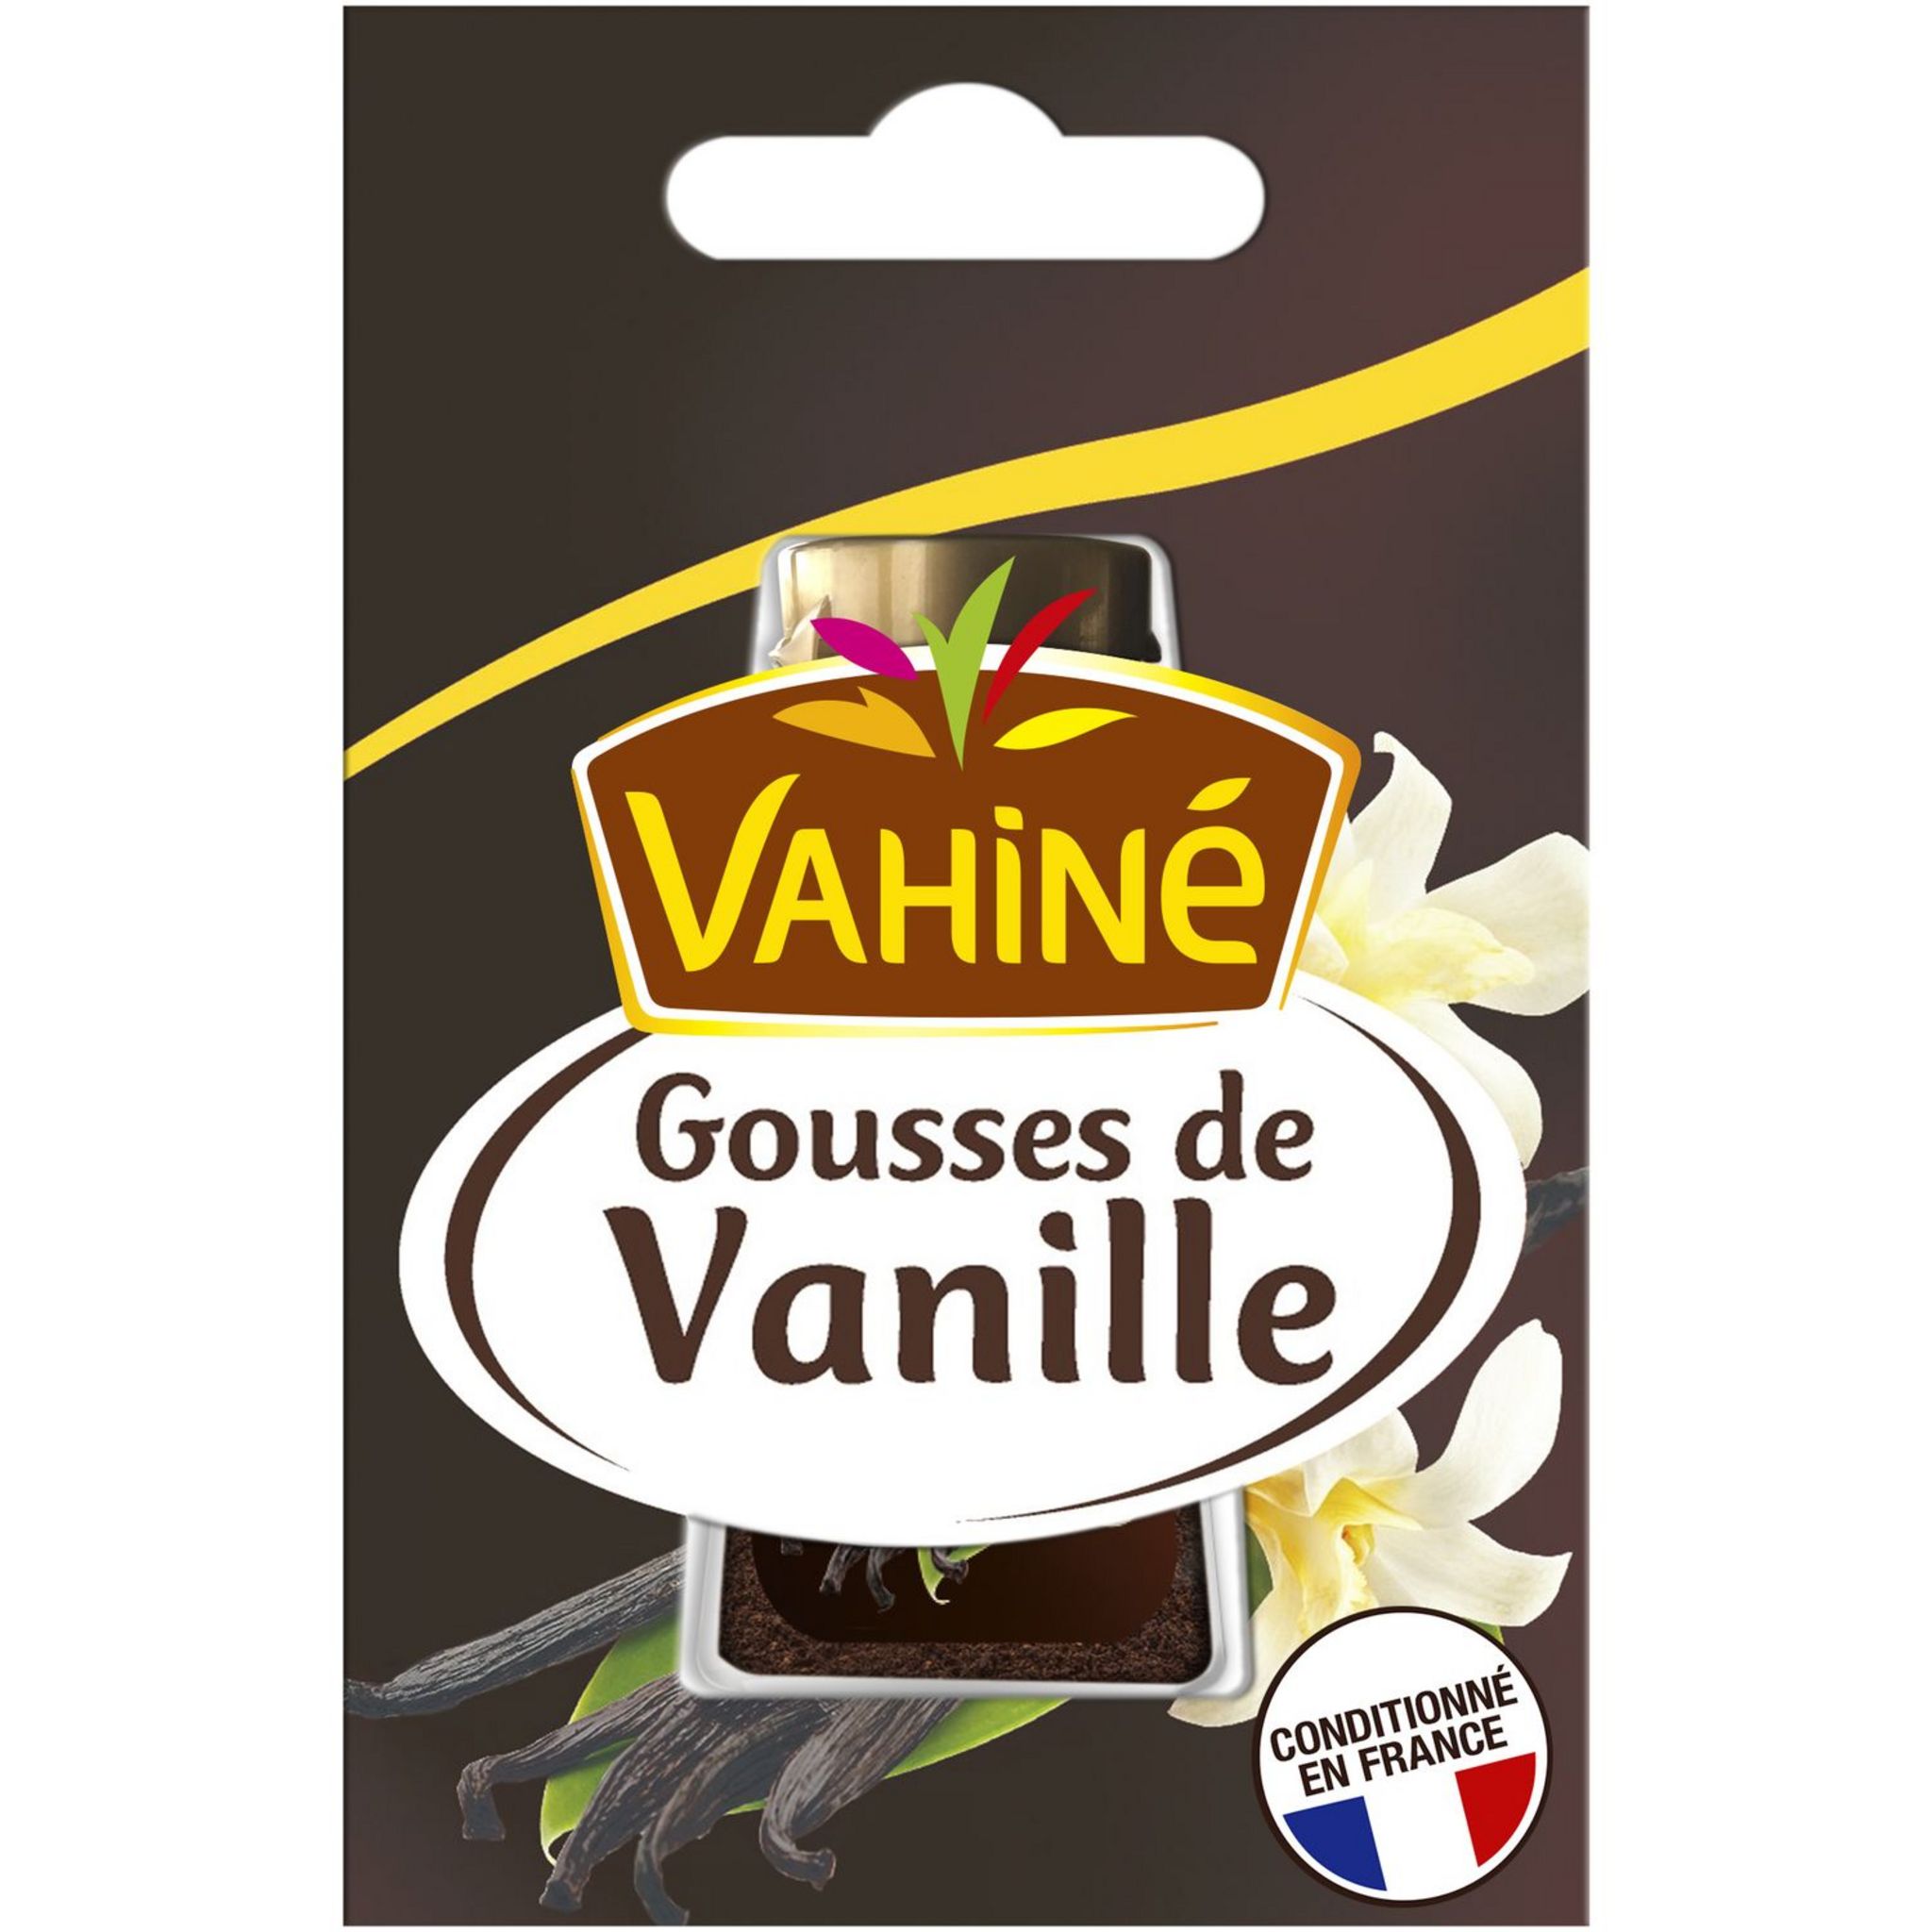 Gousses de Vanille en poudre sucrées, Vahiné (8 g)